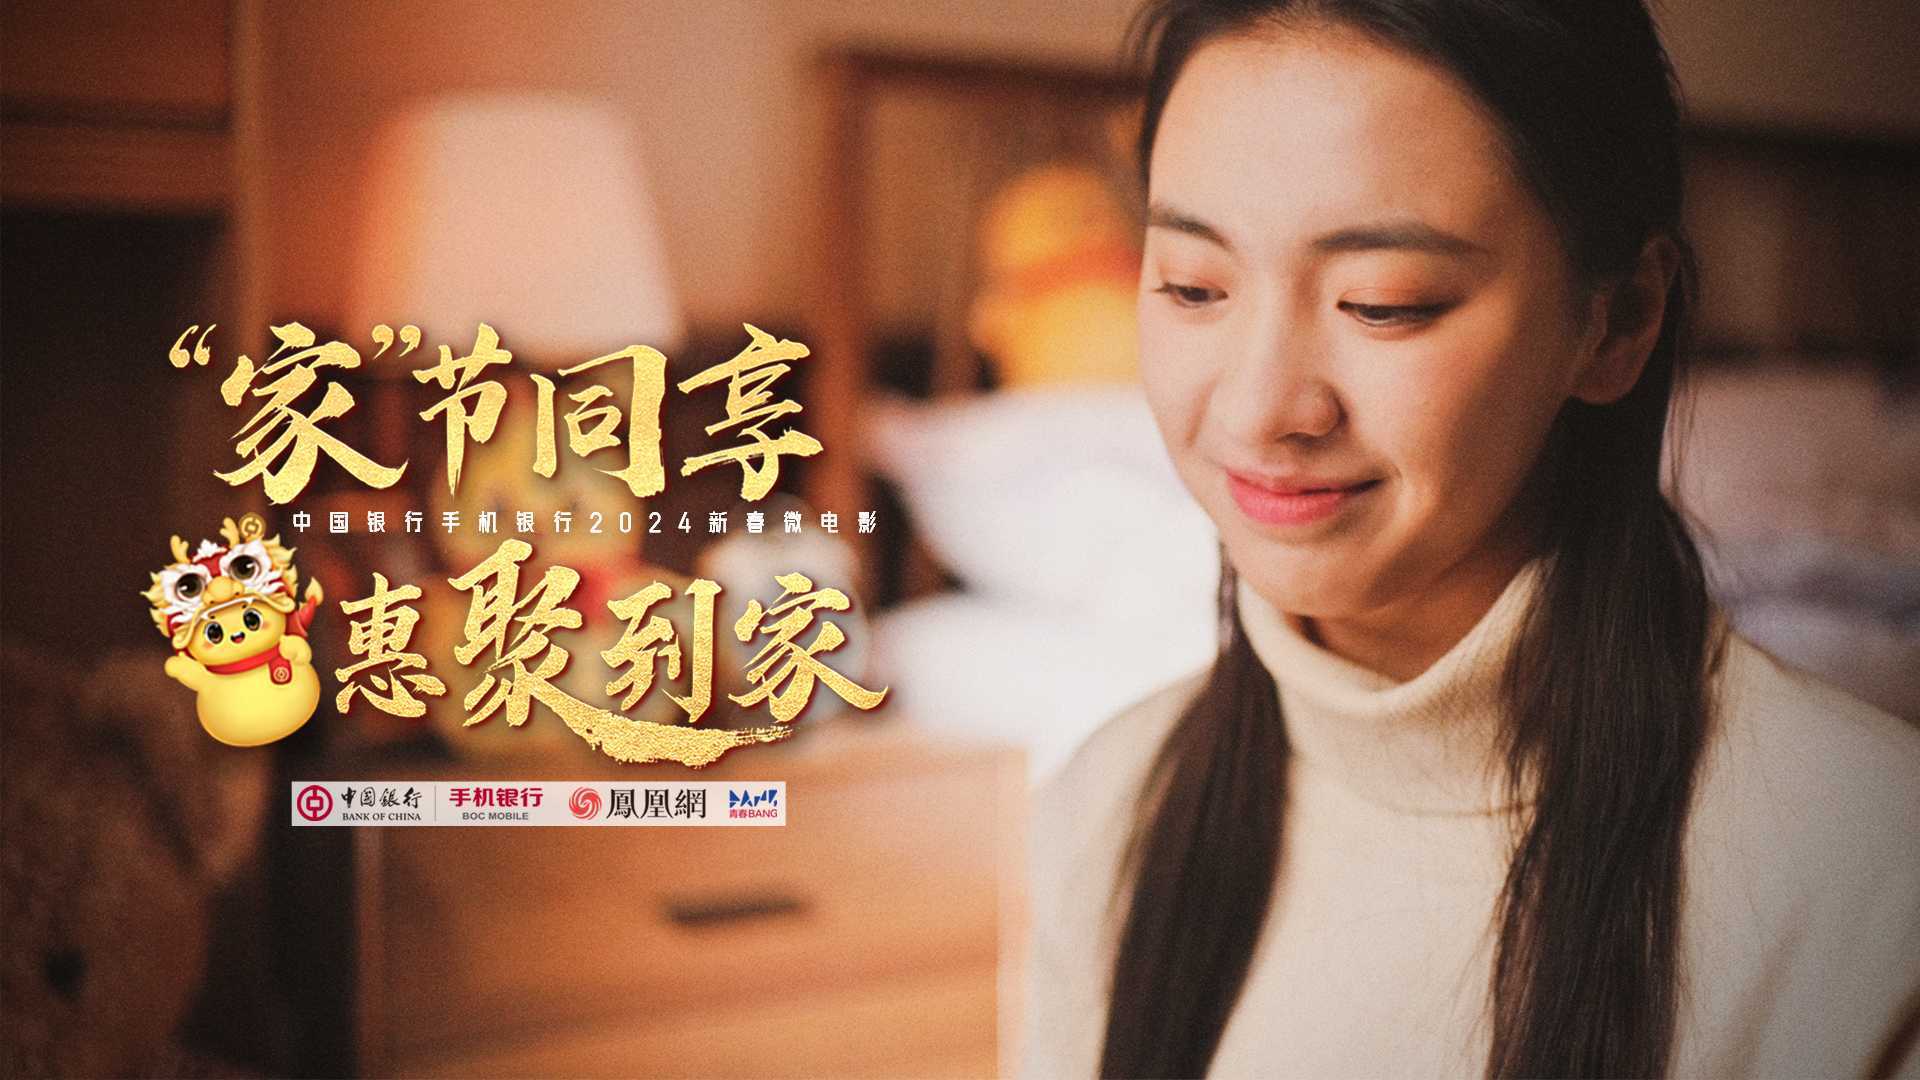 中国银行X凤凰网青春BANG  -「家节同享，惠聚到家」新春贺岁微电影